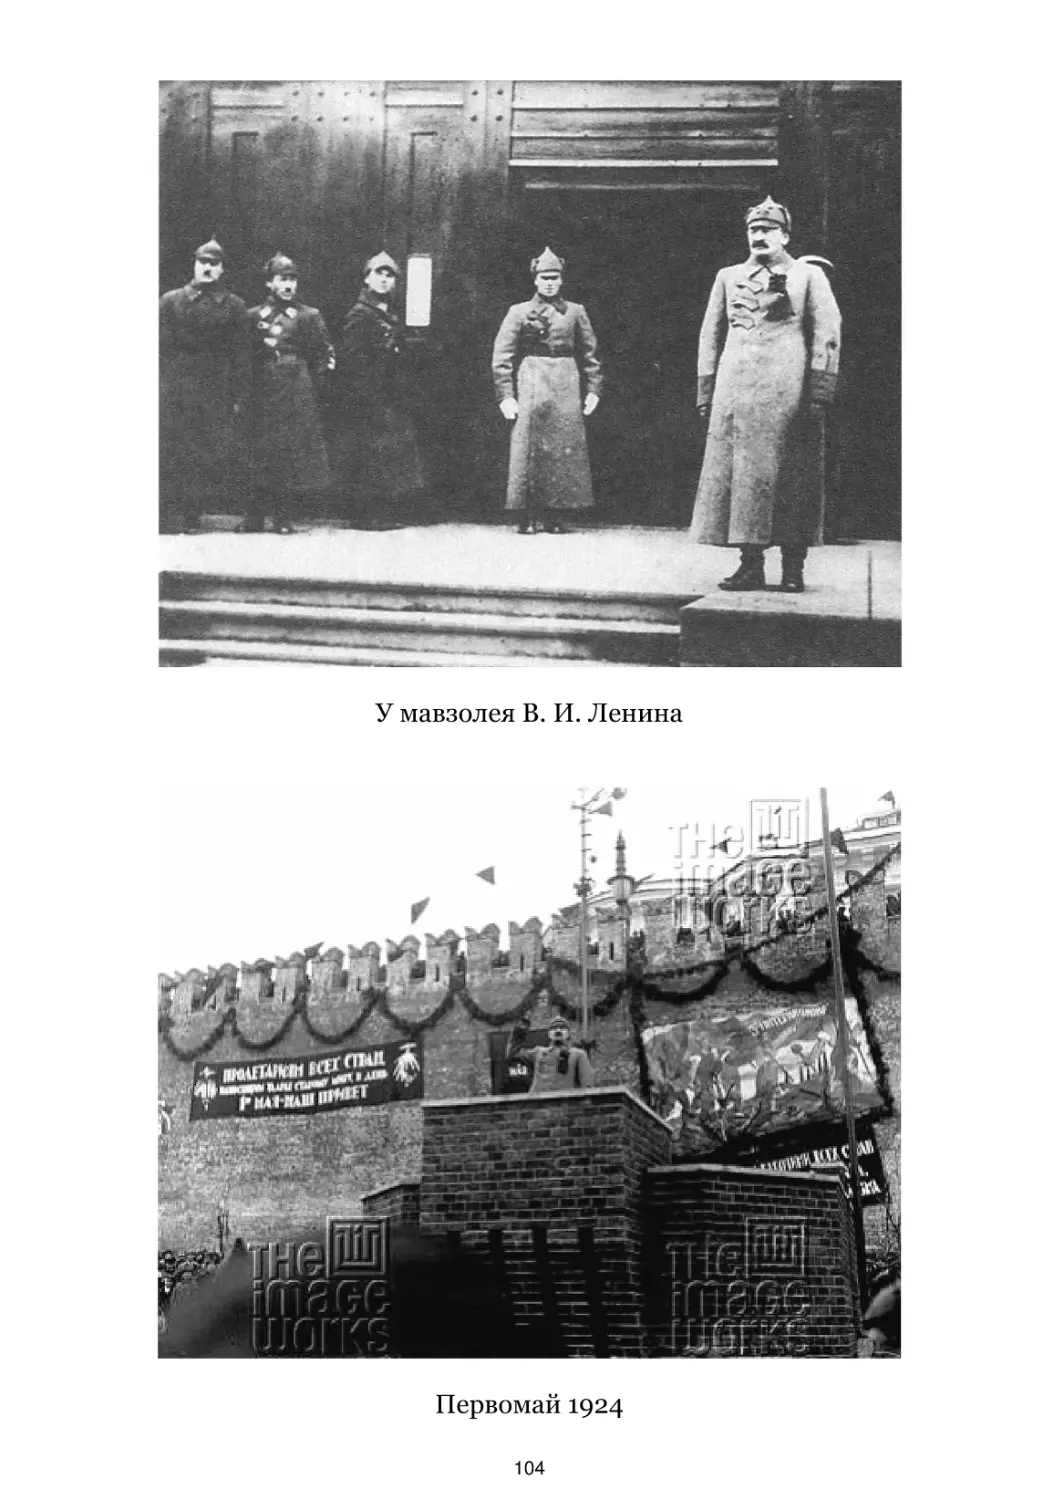 У мавзолея В. И. Ленина
Первомай 1924